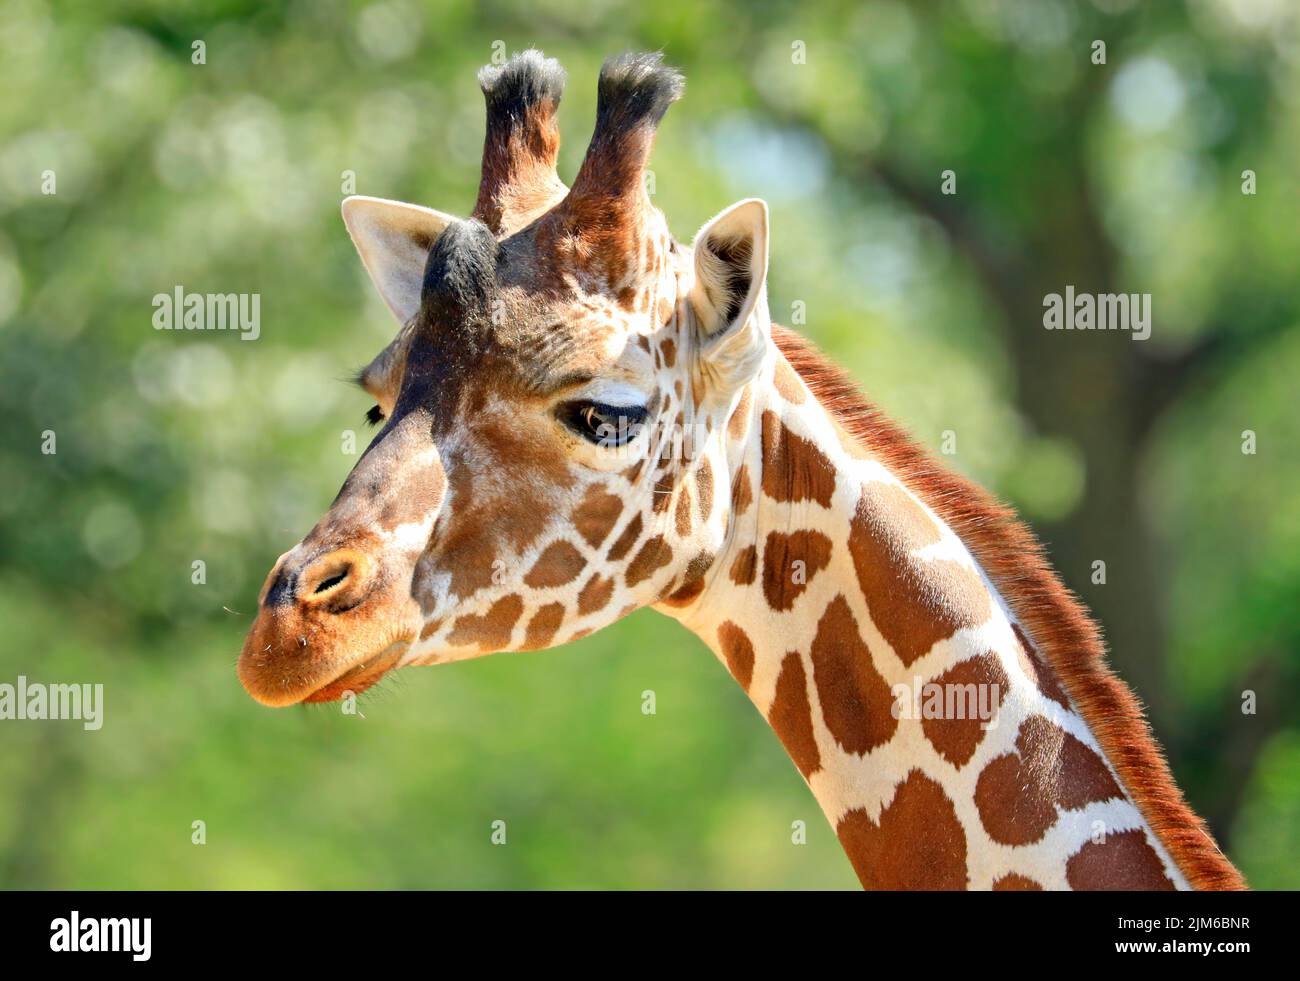 Portrait de près de la tête et du cou de girafe avec fond vert Banque D'Images